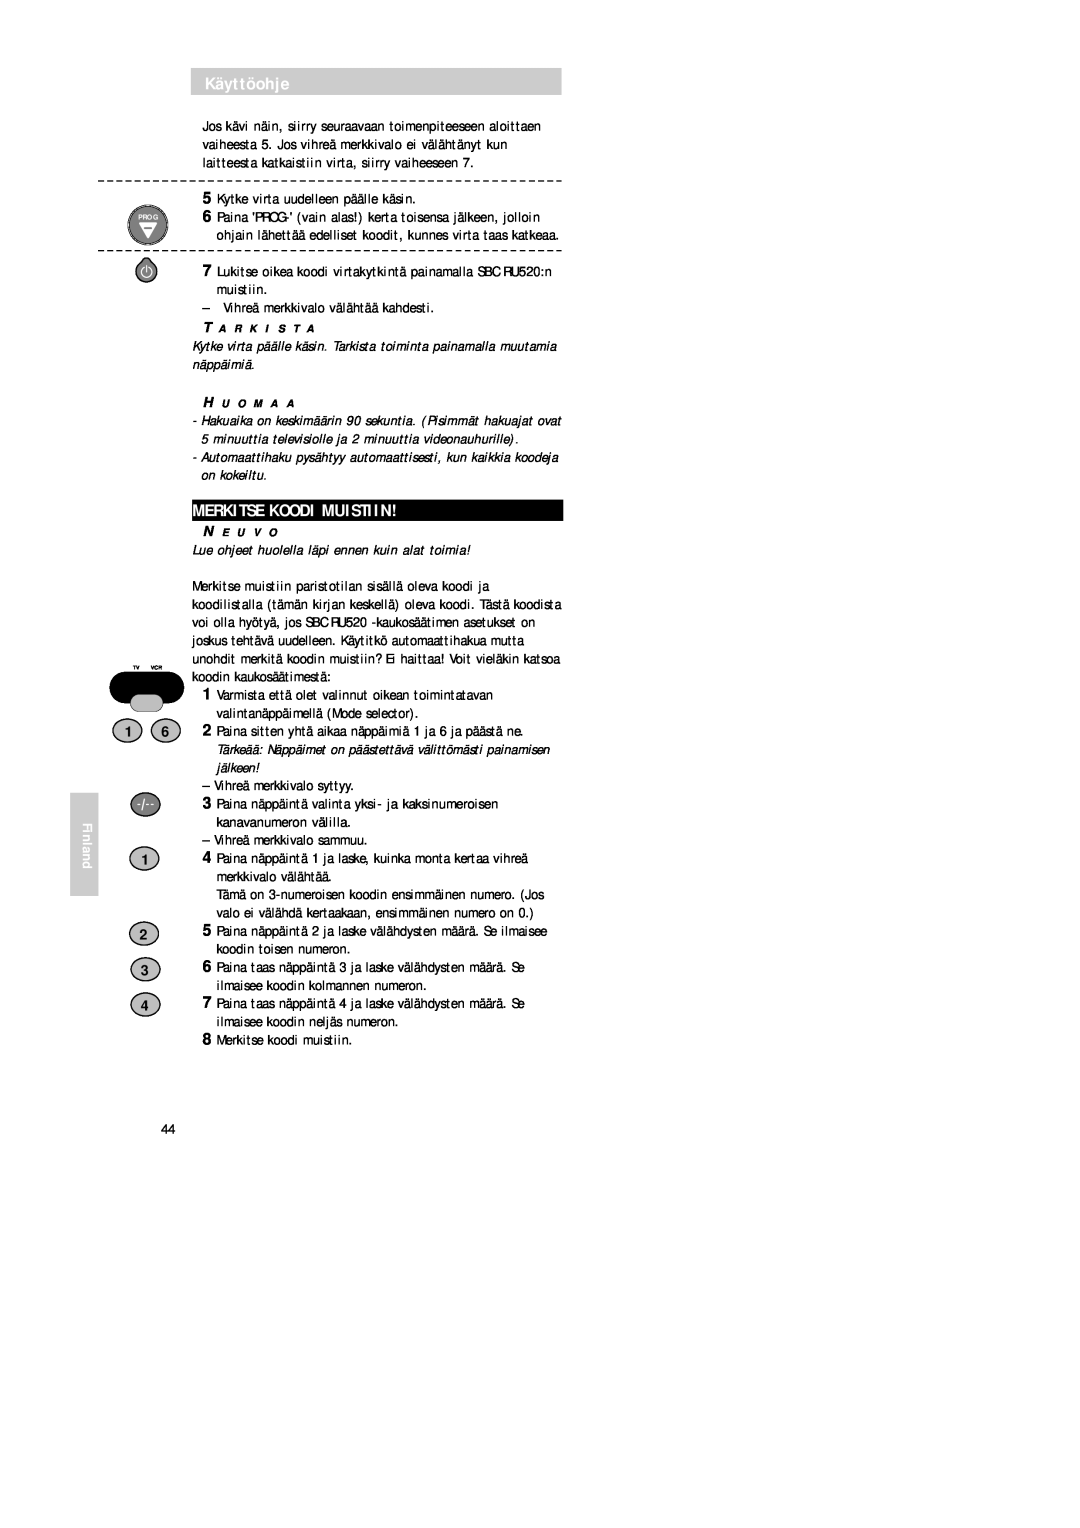 Philips SBC RU 520 manual Merkitse Koodi Muistiin, Käyttöohje, Finland, Kytke virta uudelleen päälle käsin 